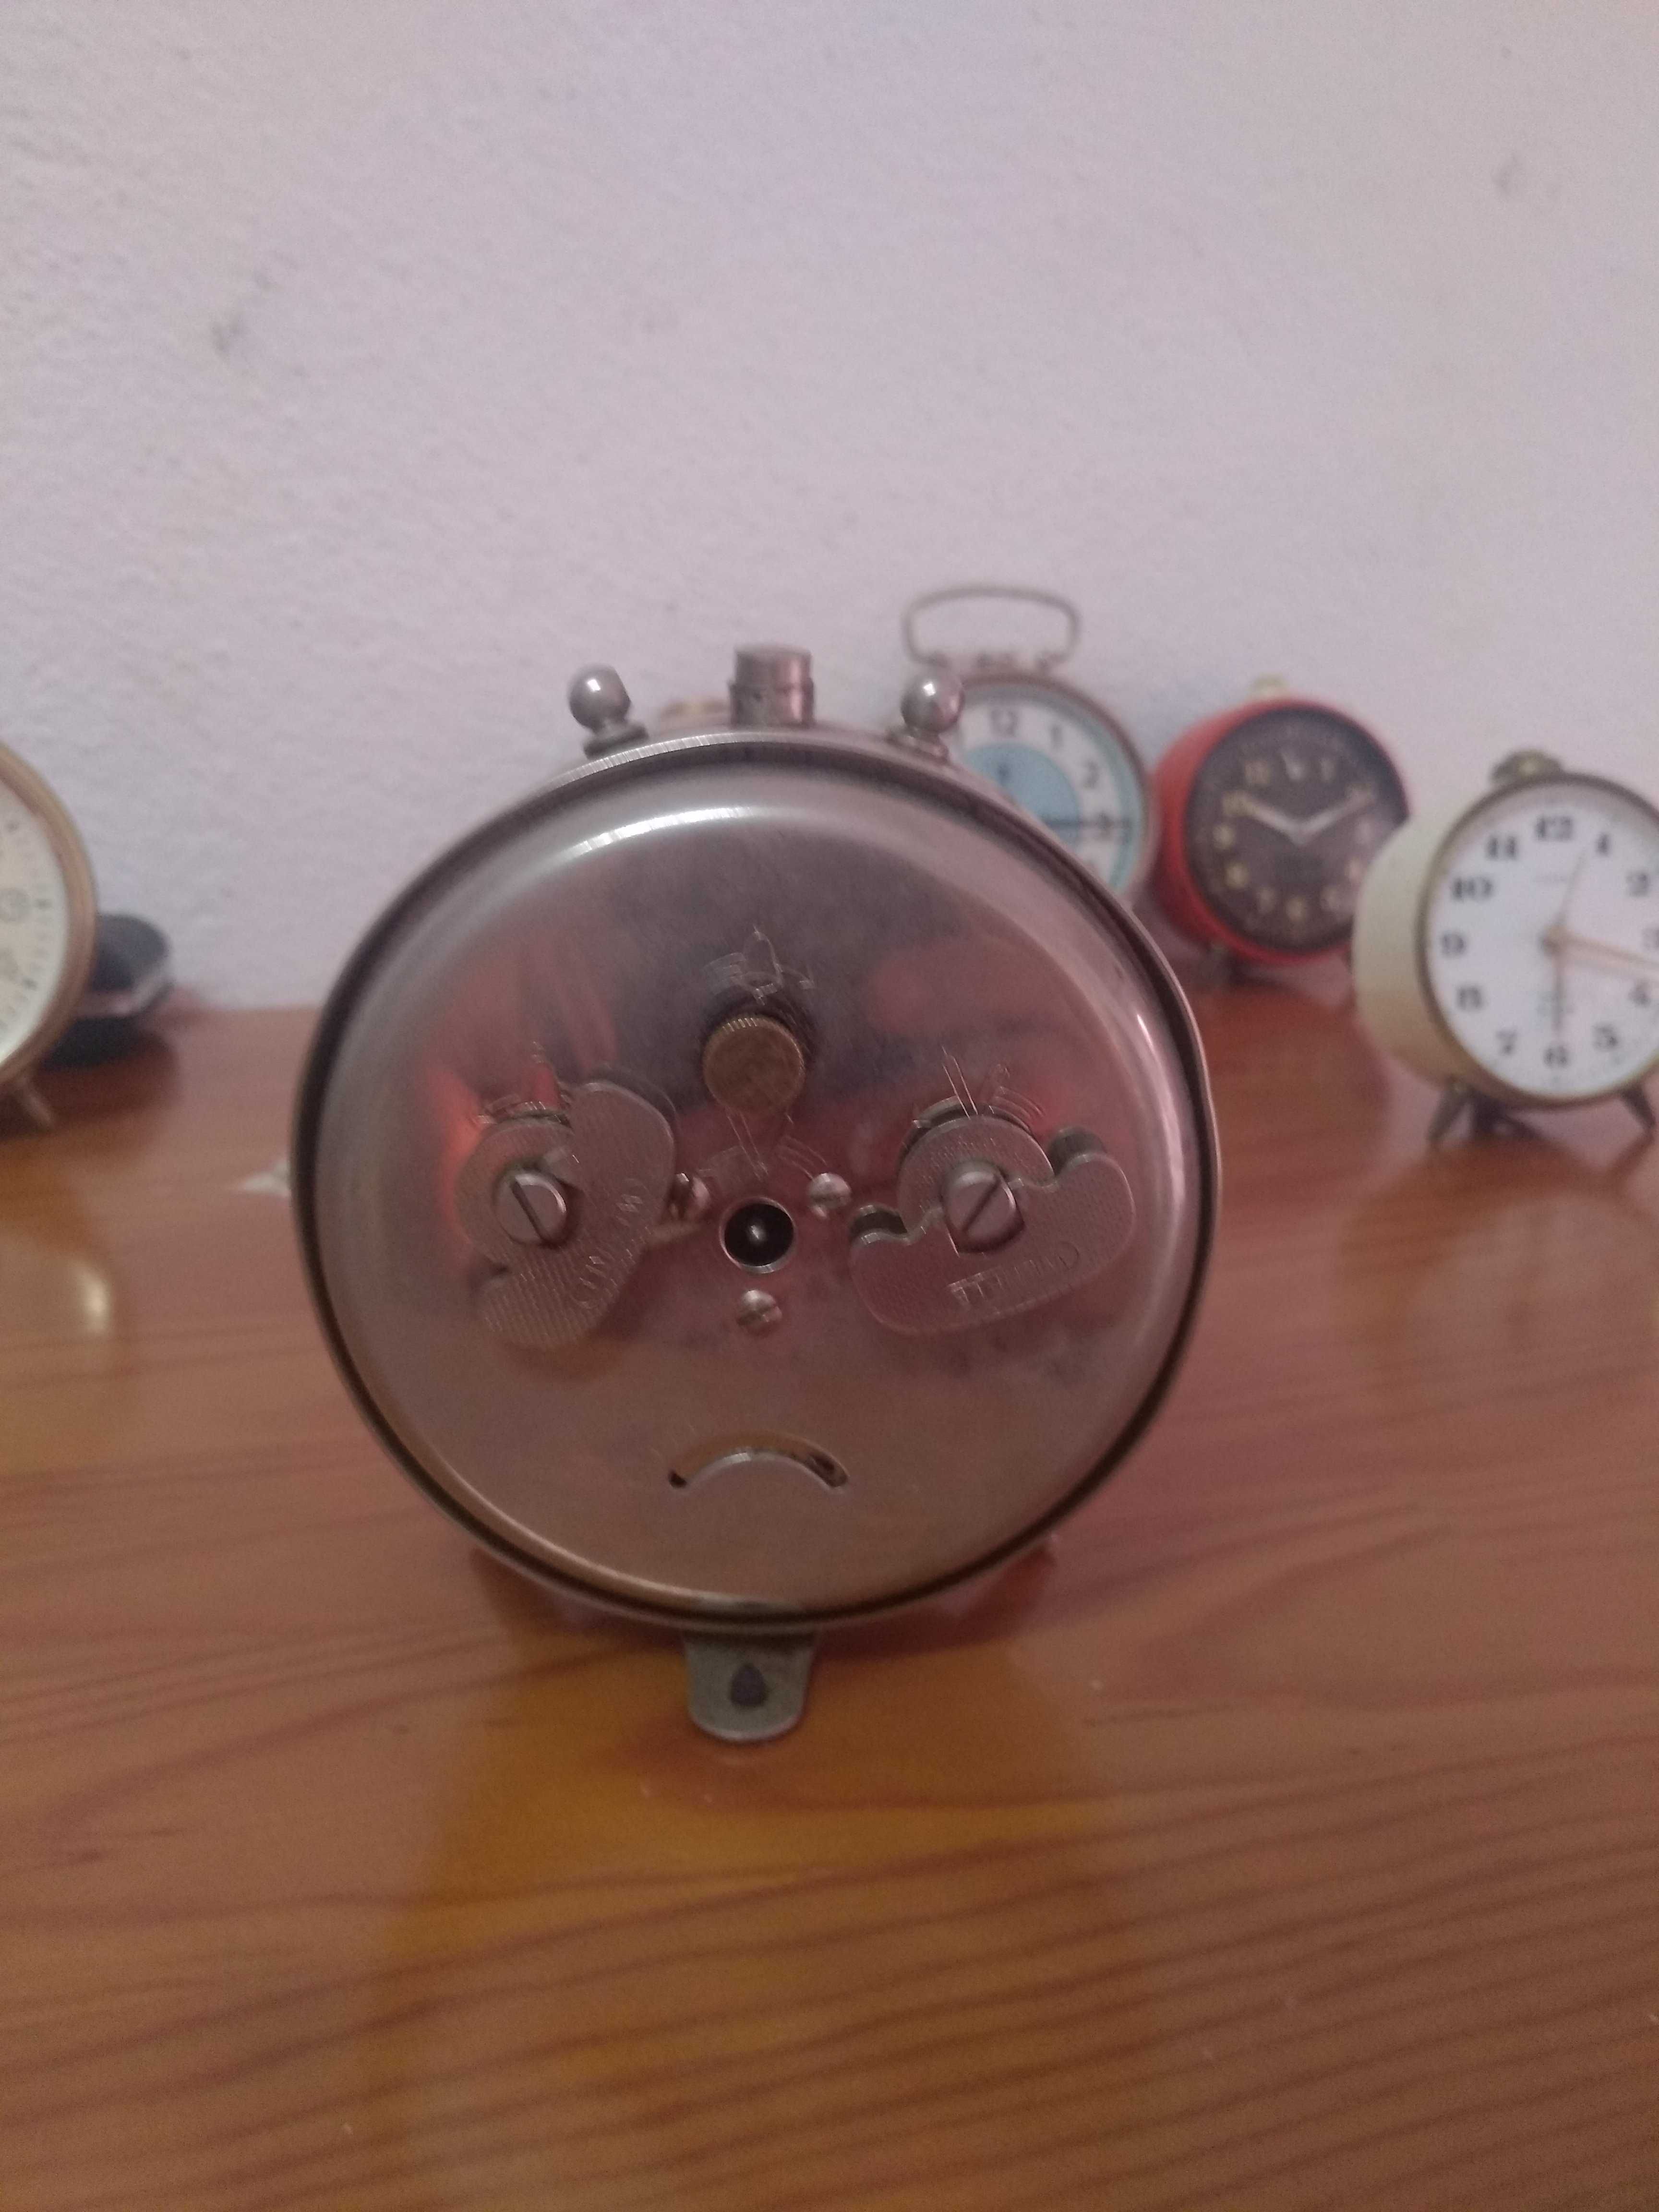 Relógio despertador marca wehrle modelo polo made in Germany